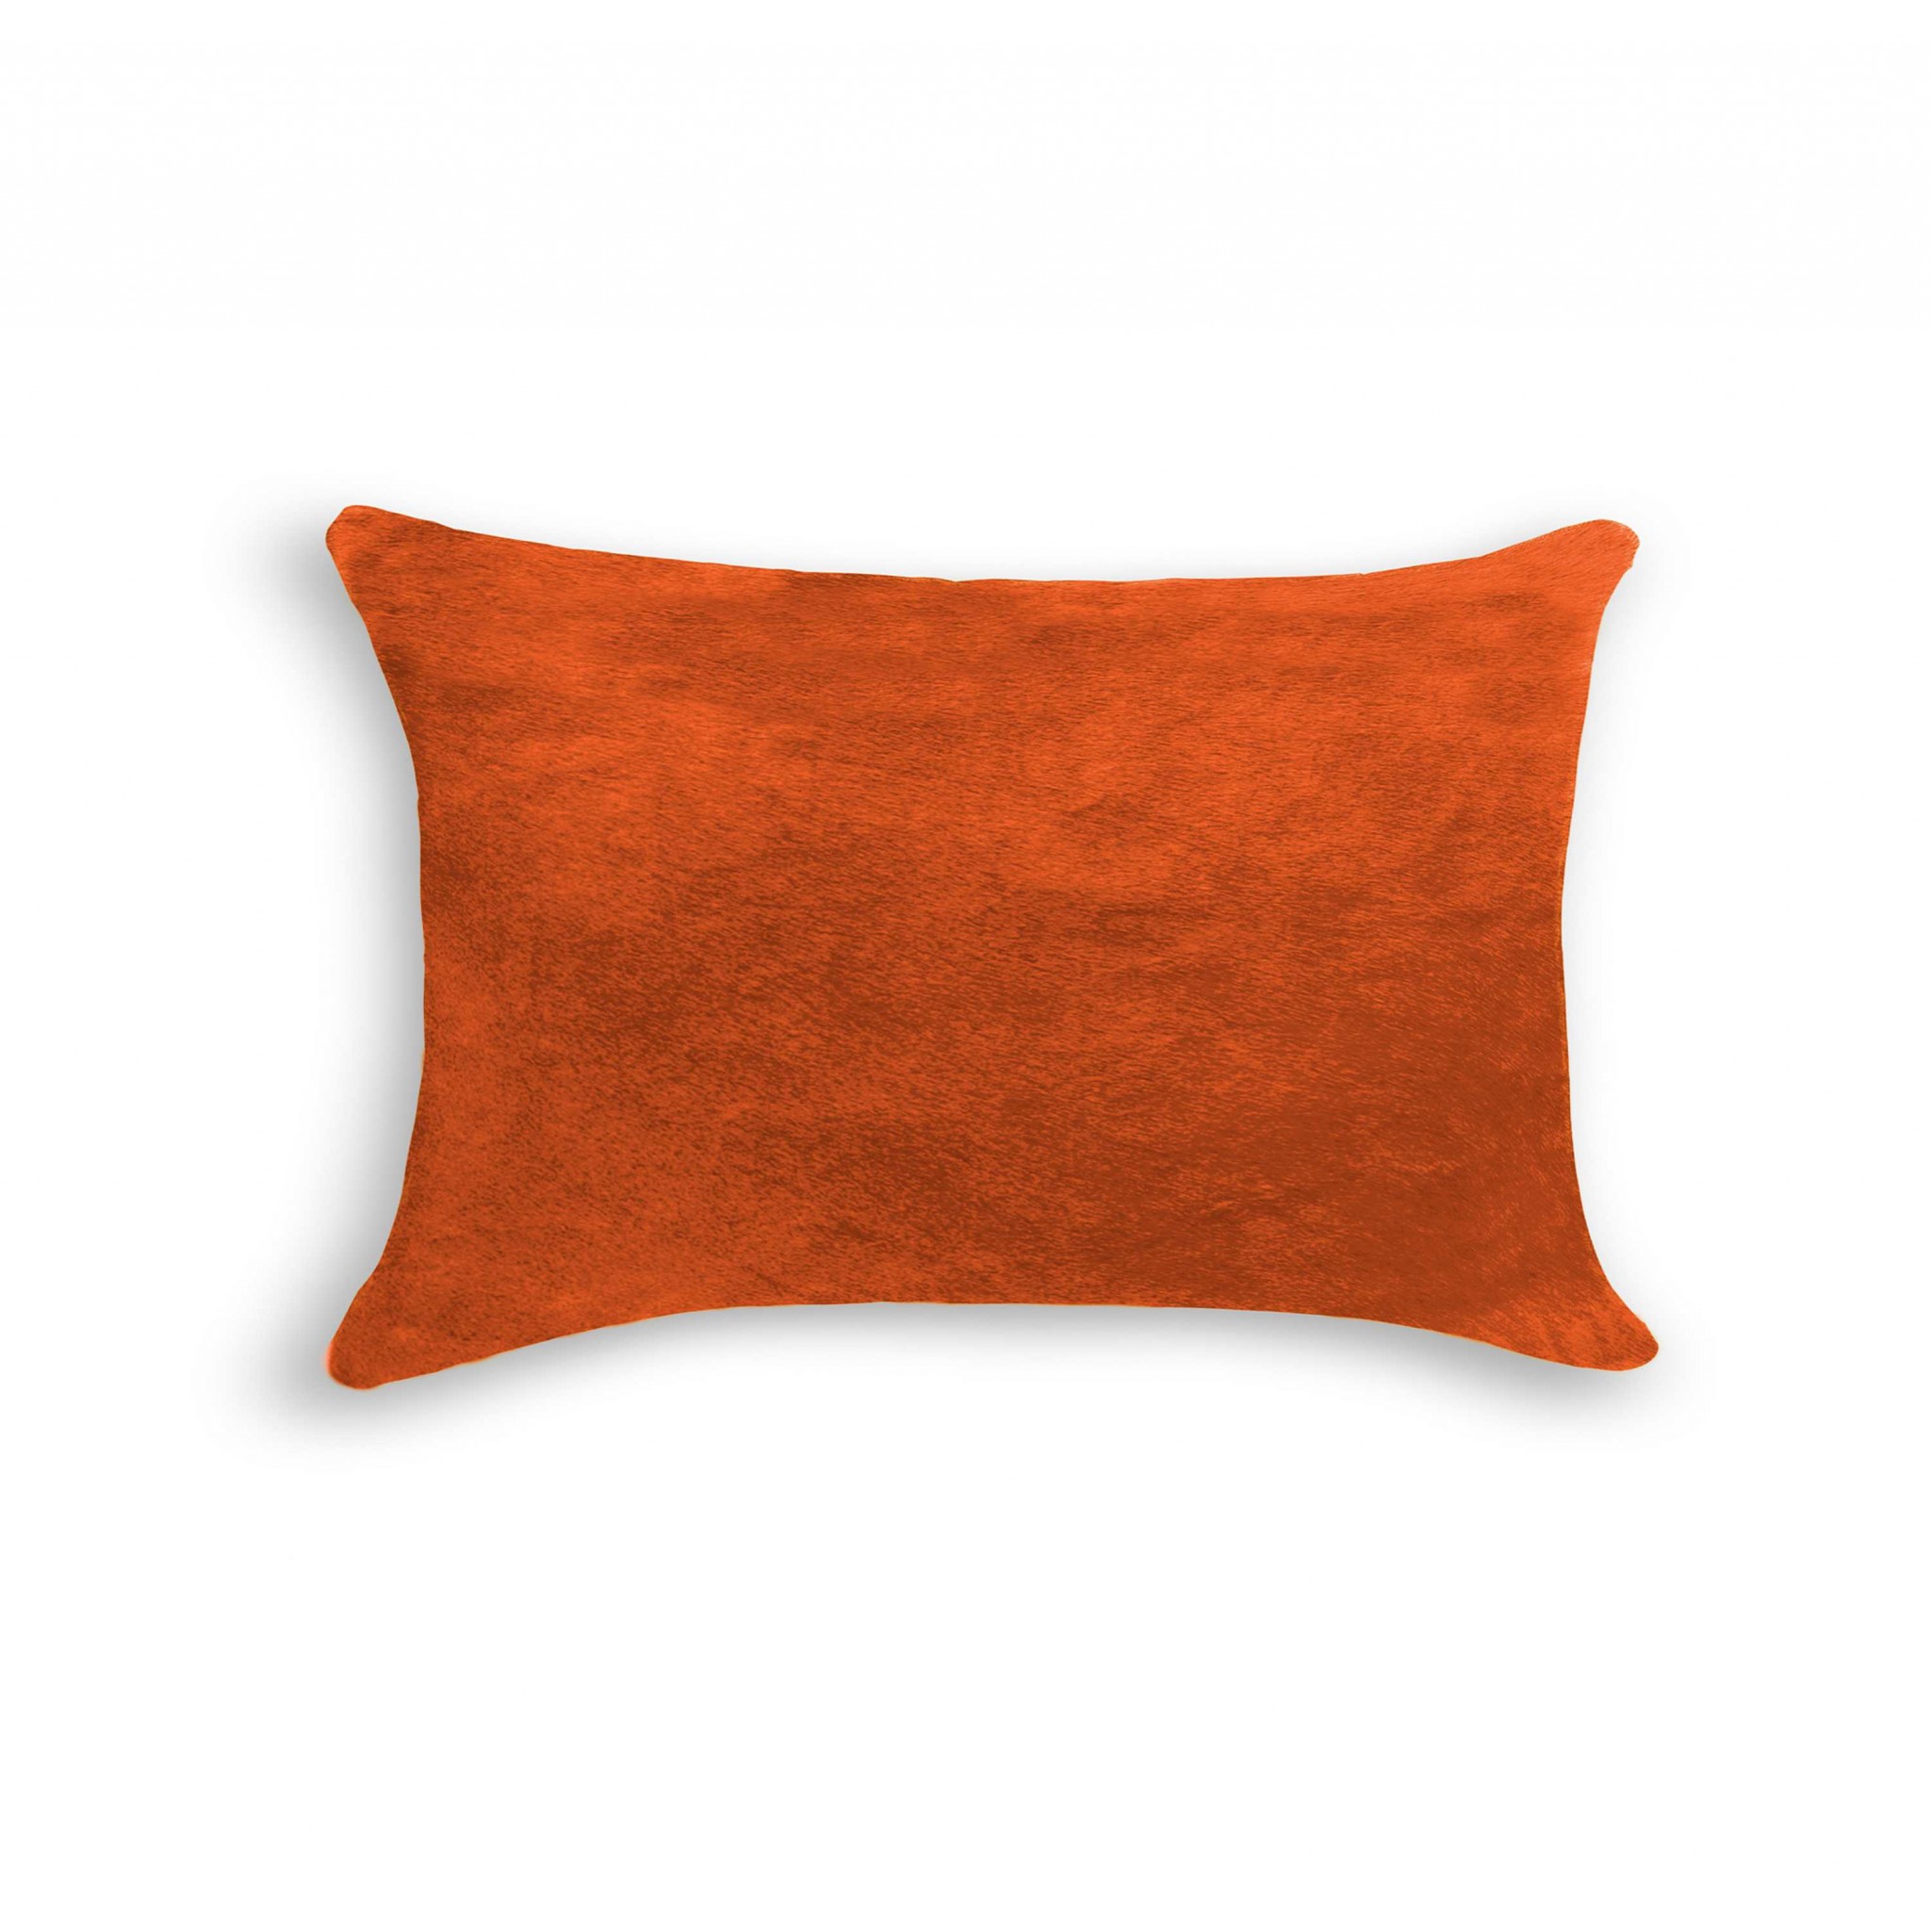 12" x 20" x 5" Orange Cowhide - Pillow